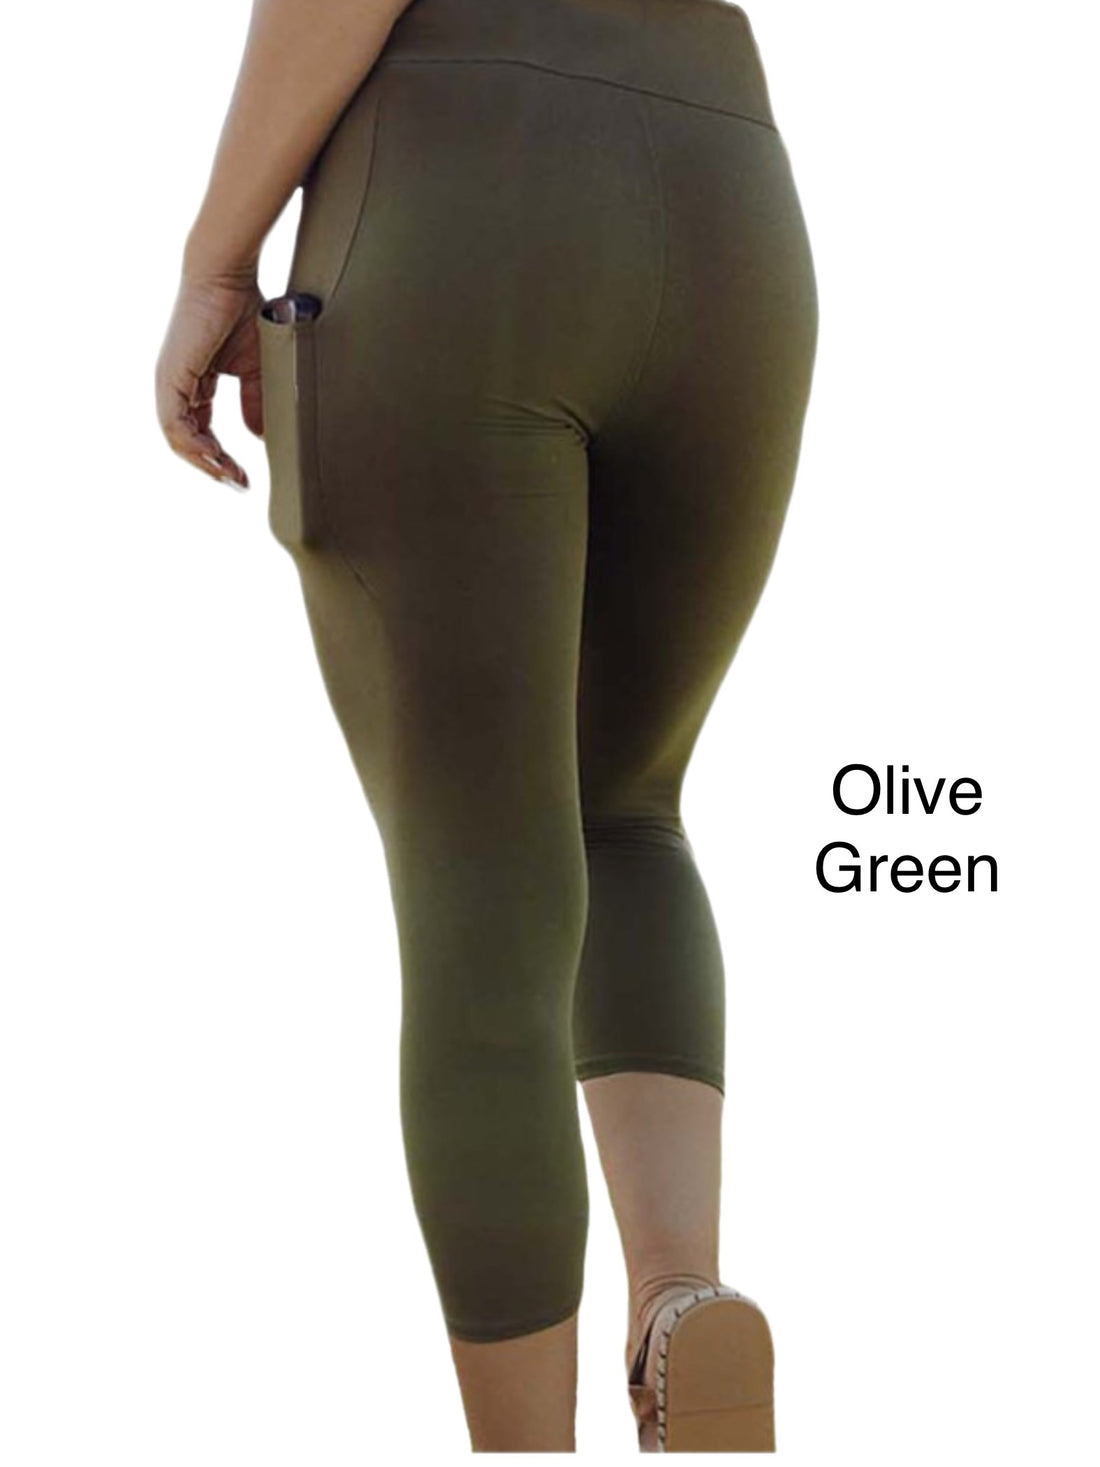 Olive Green Leggings Capri Length w/ Pockets